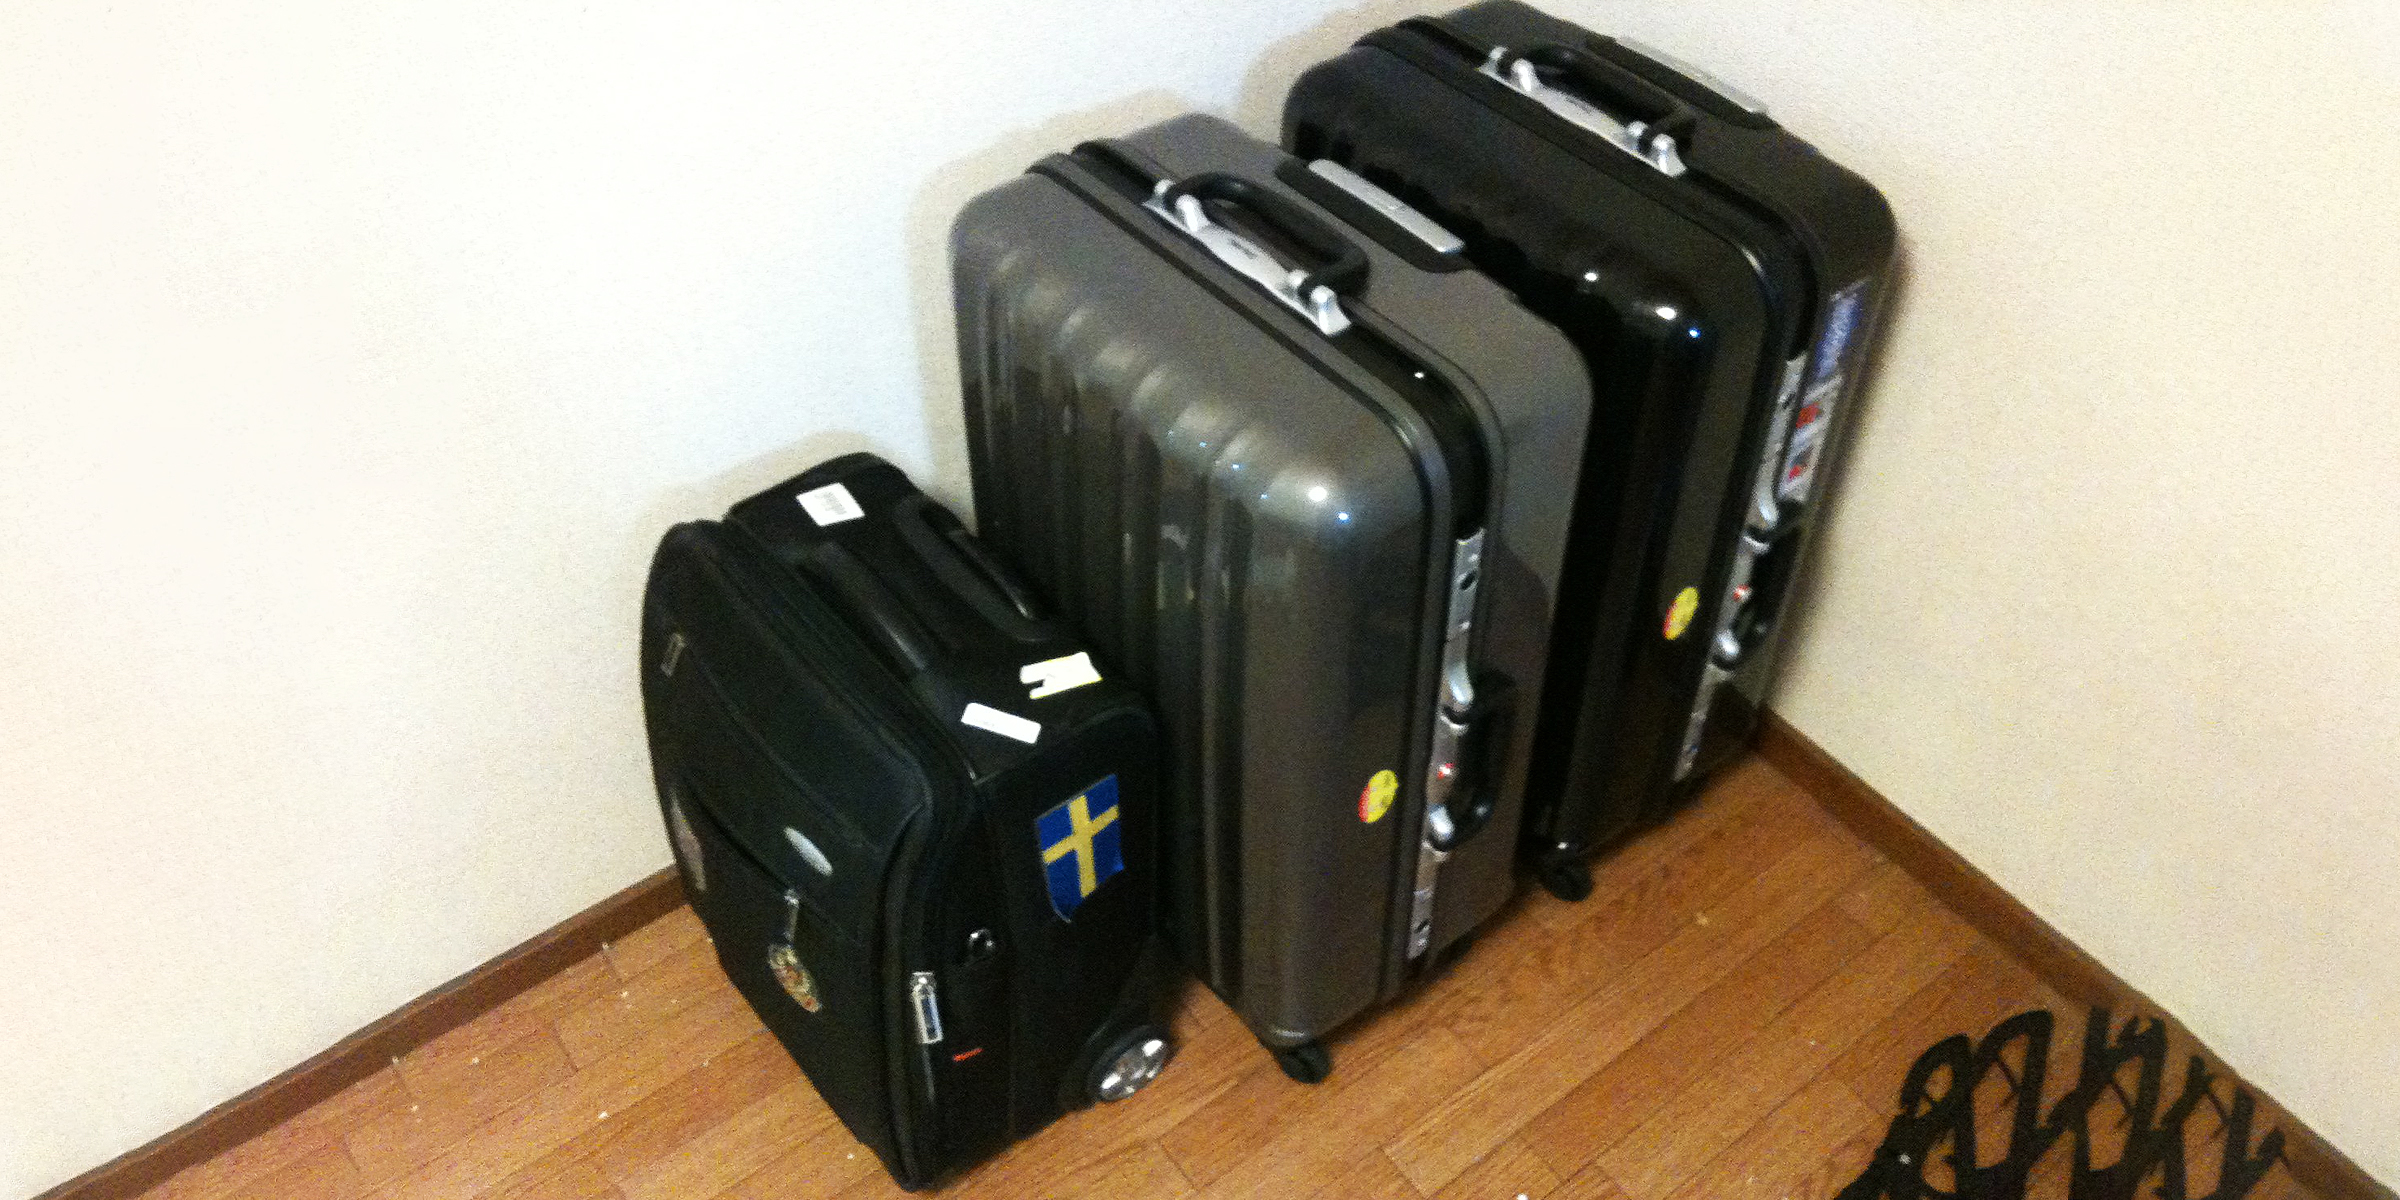 Tres bolsas de equipaje | Fuente: Flickr.com/kalleboo (CC BY 2.0)